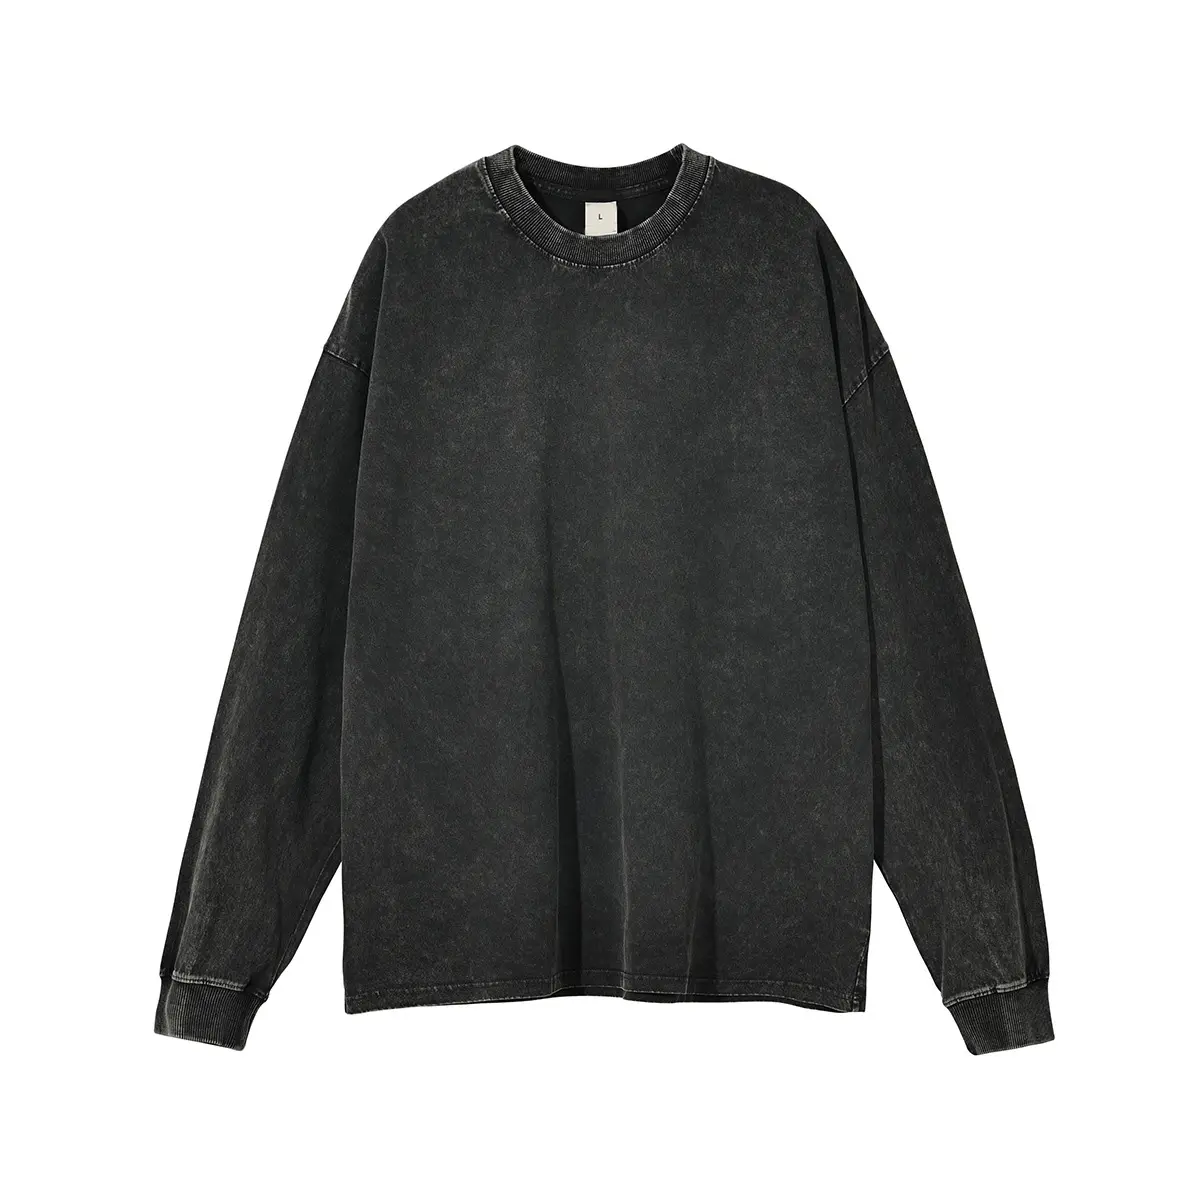 OEM गुणवत्ता रिक्त विंटेज टी शर्ट थोक बनाने के लिए Oversized स्वेटर शर्ट हैवीवेट कपास बाटिक धोने पुराने यूनिसेक्स टी शर्ट